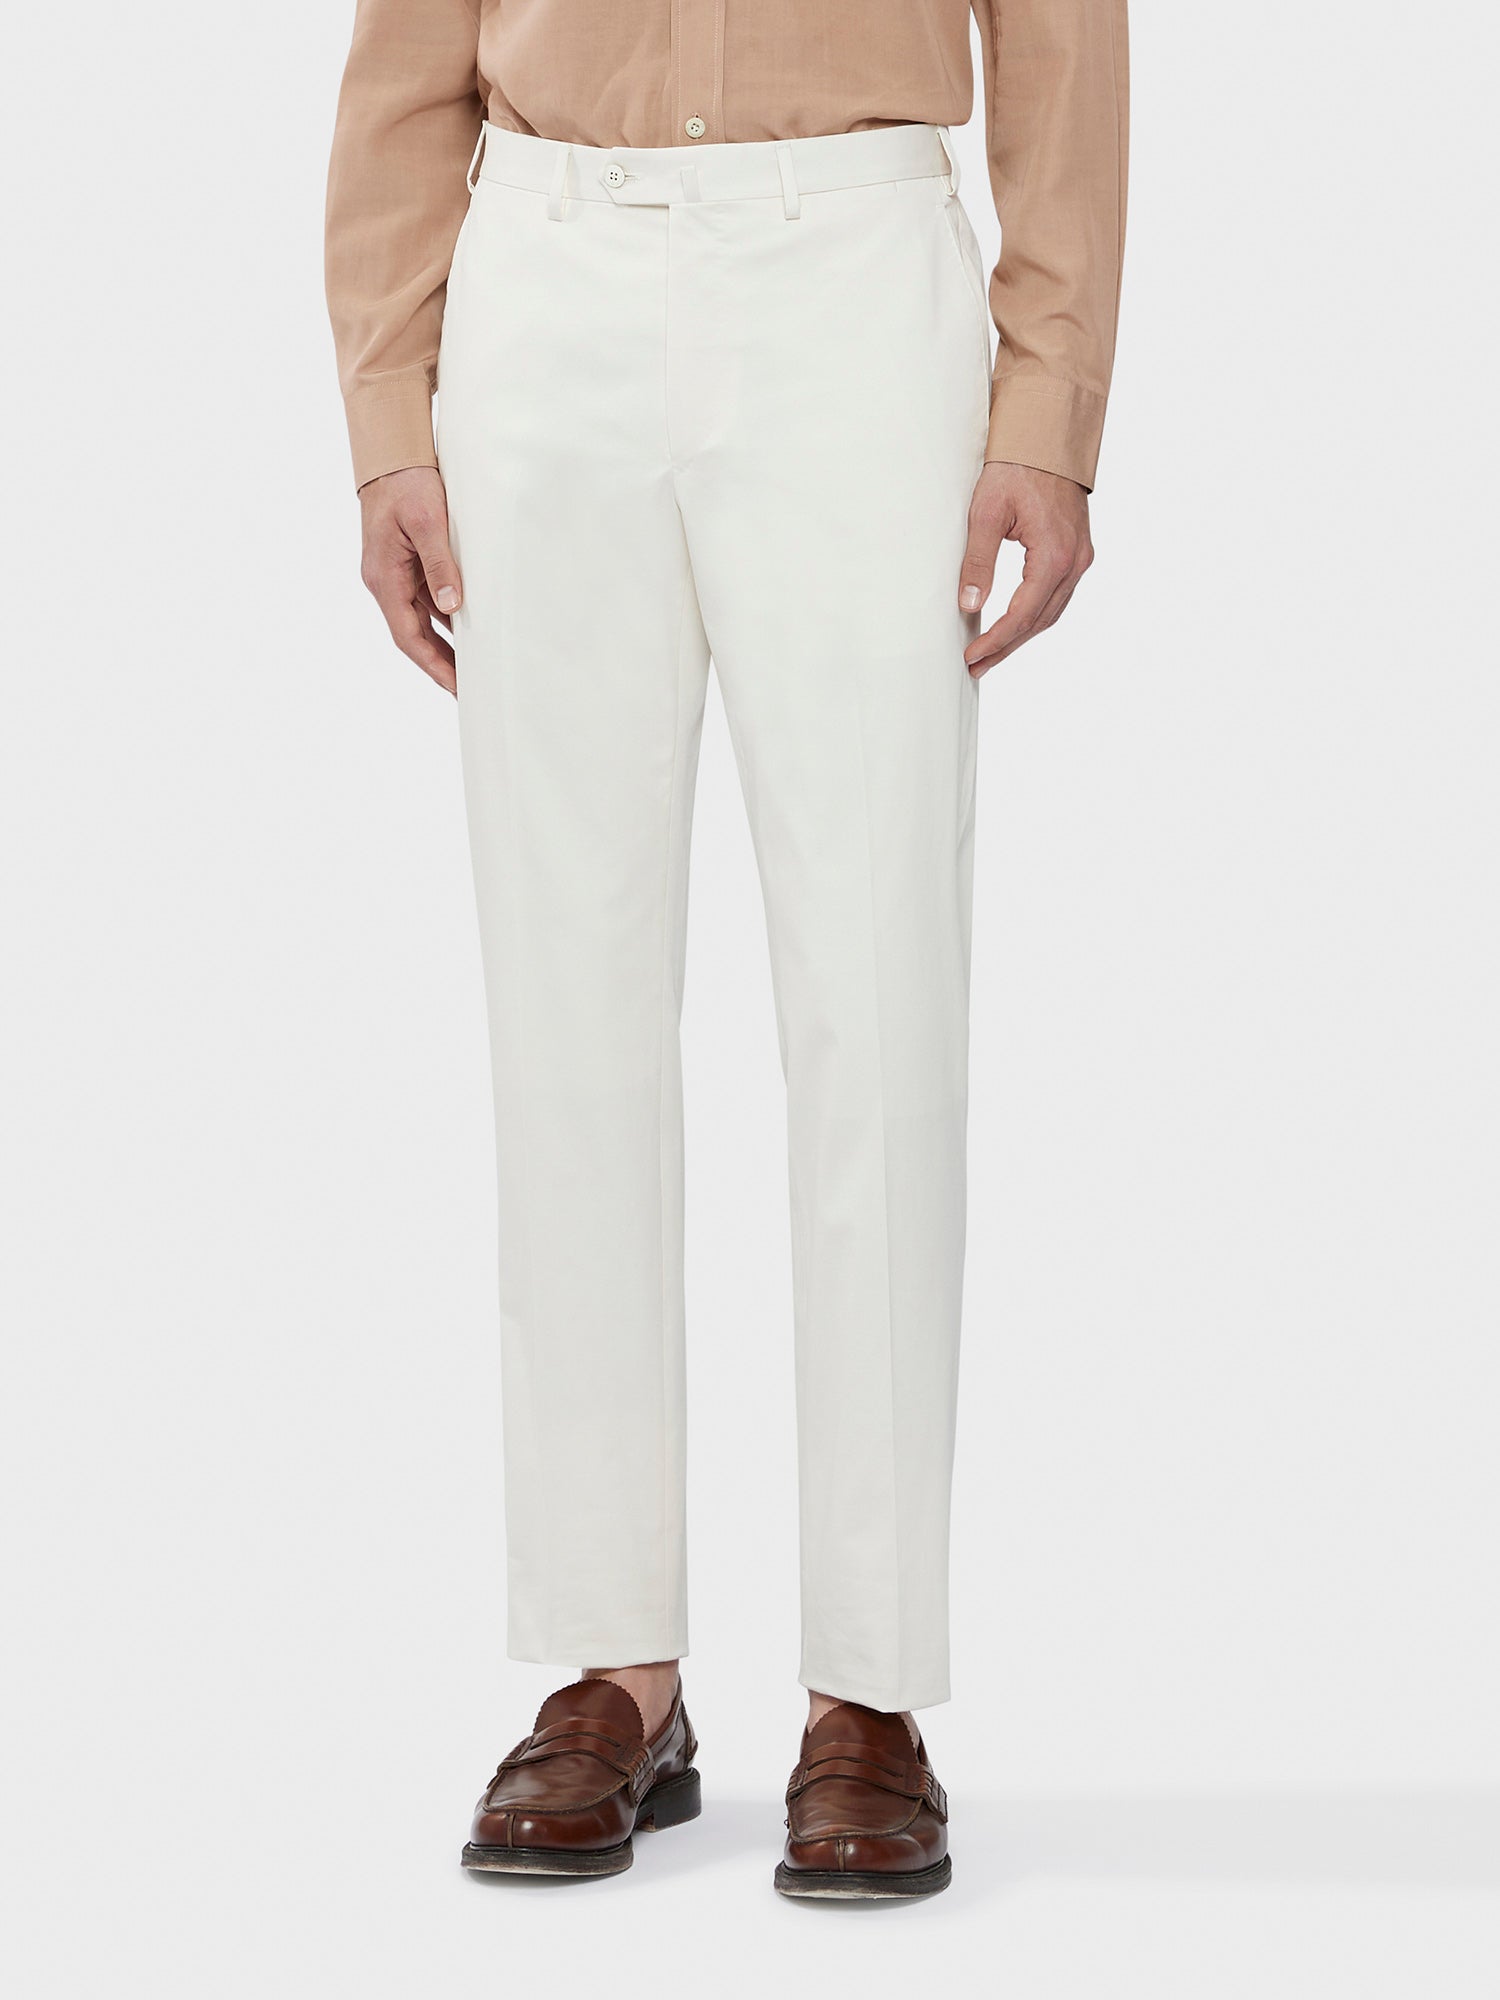 Caruso Menswear Abbigliamento Uomo Abito Aida in cotone-elastane bianco drop 8R dettaglio pantalone